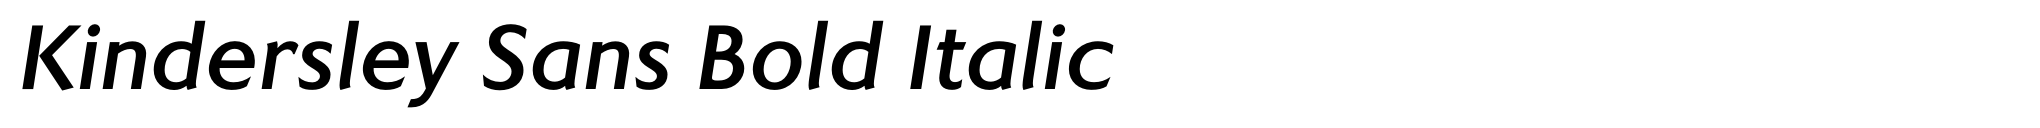 Kindersley Sans Bold Italic image